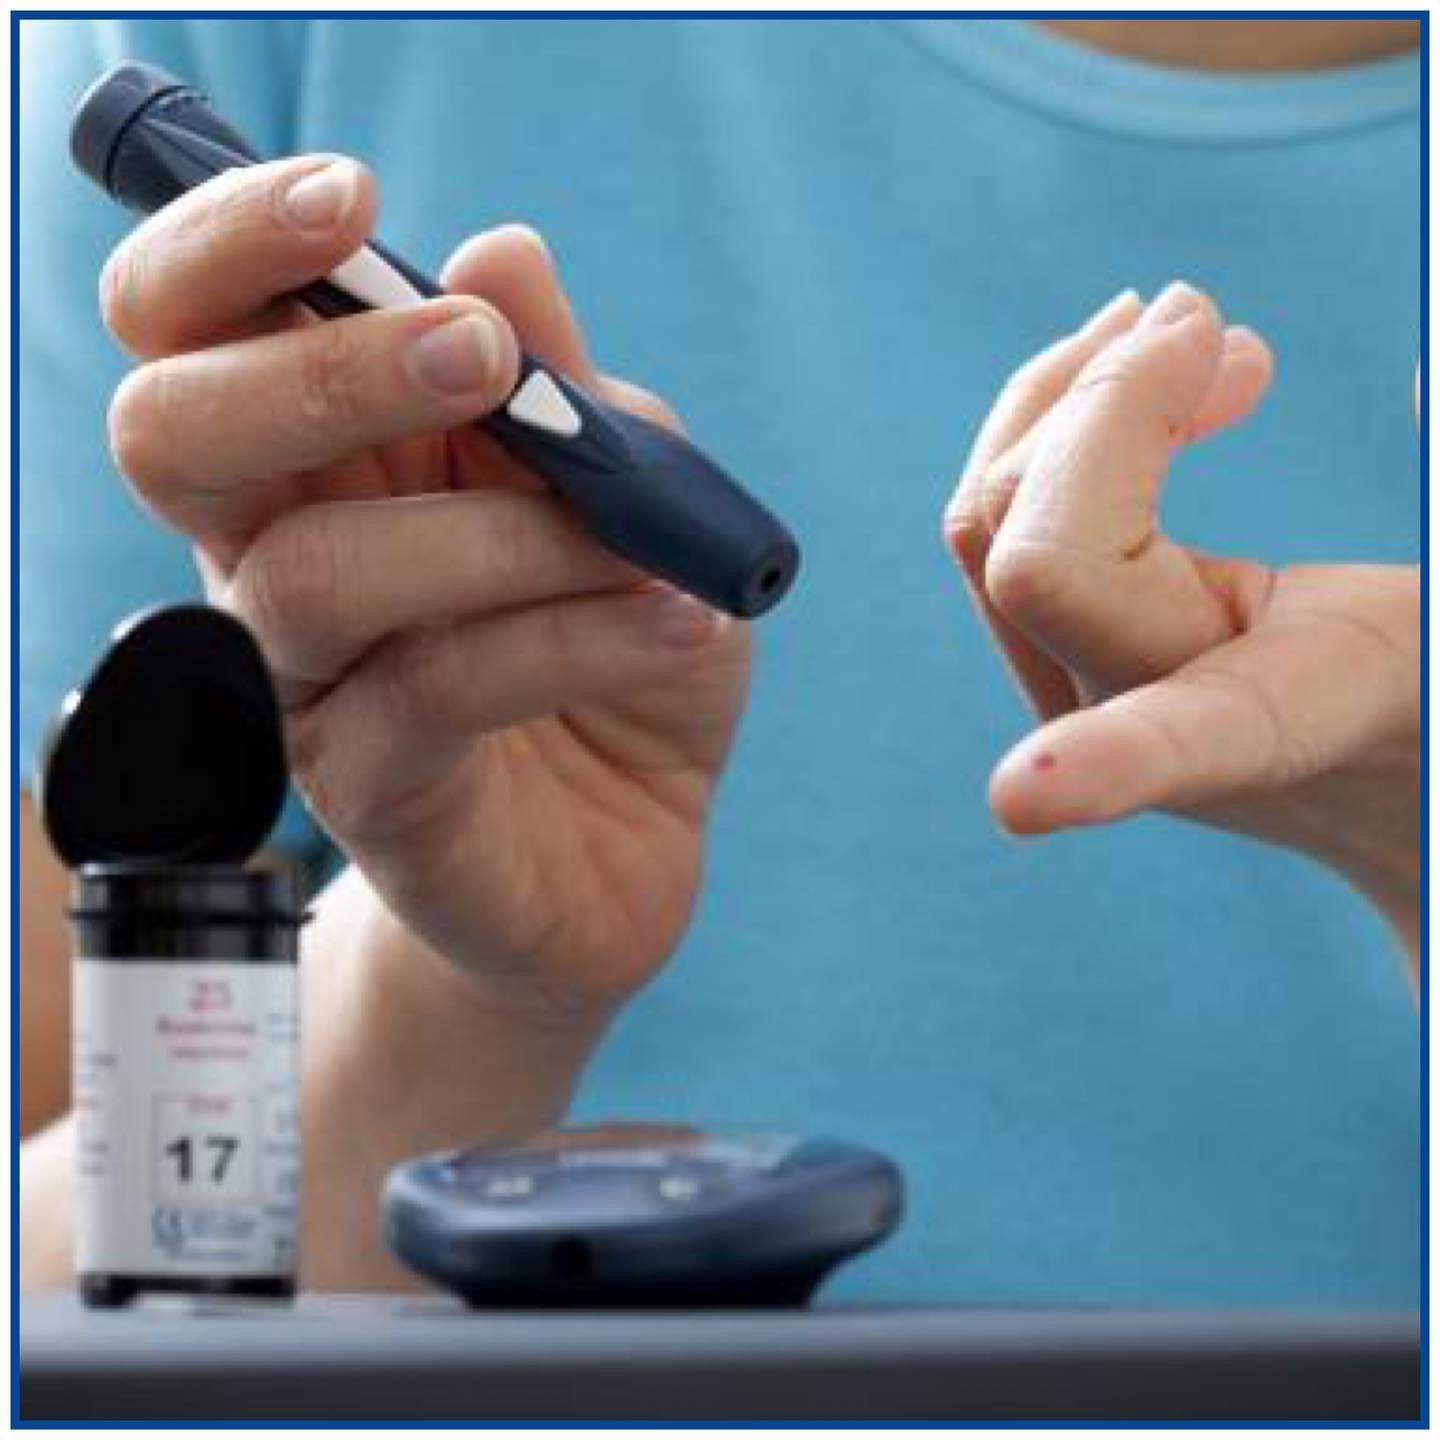 Diabetli xəstələr fəsil dəyişmələri zamanı ürək-damar müayinələrinə daha məsuliyyətli yanaşmalıdırlar